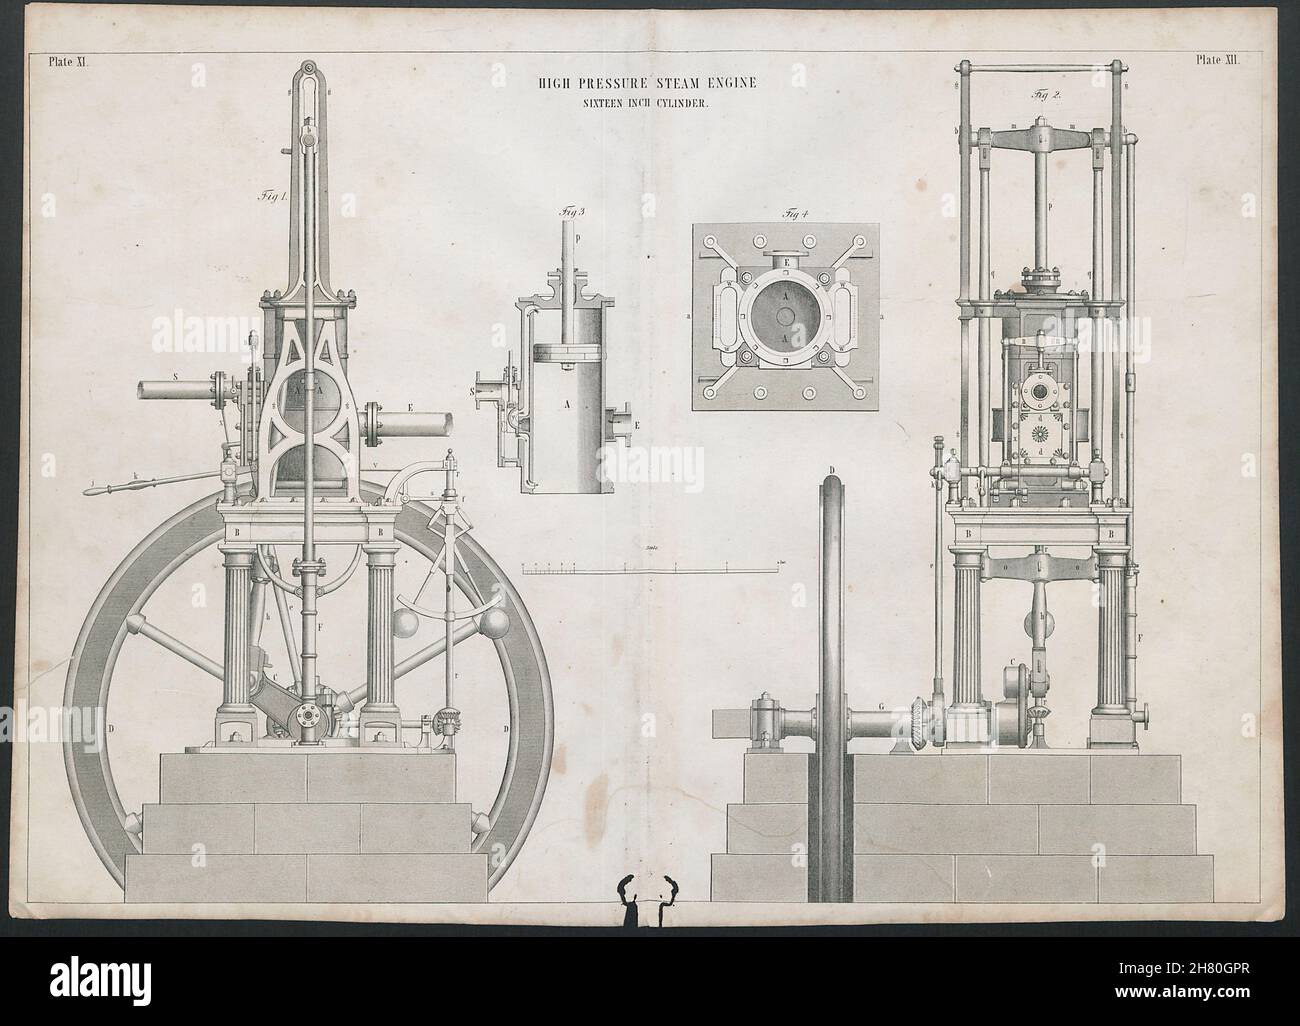 DIBUJO DE INGENIERÍA VICTORIANA Motor de vapor de alta presión, cilindro de 16 pulgadas 1847 Foto de stock